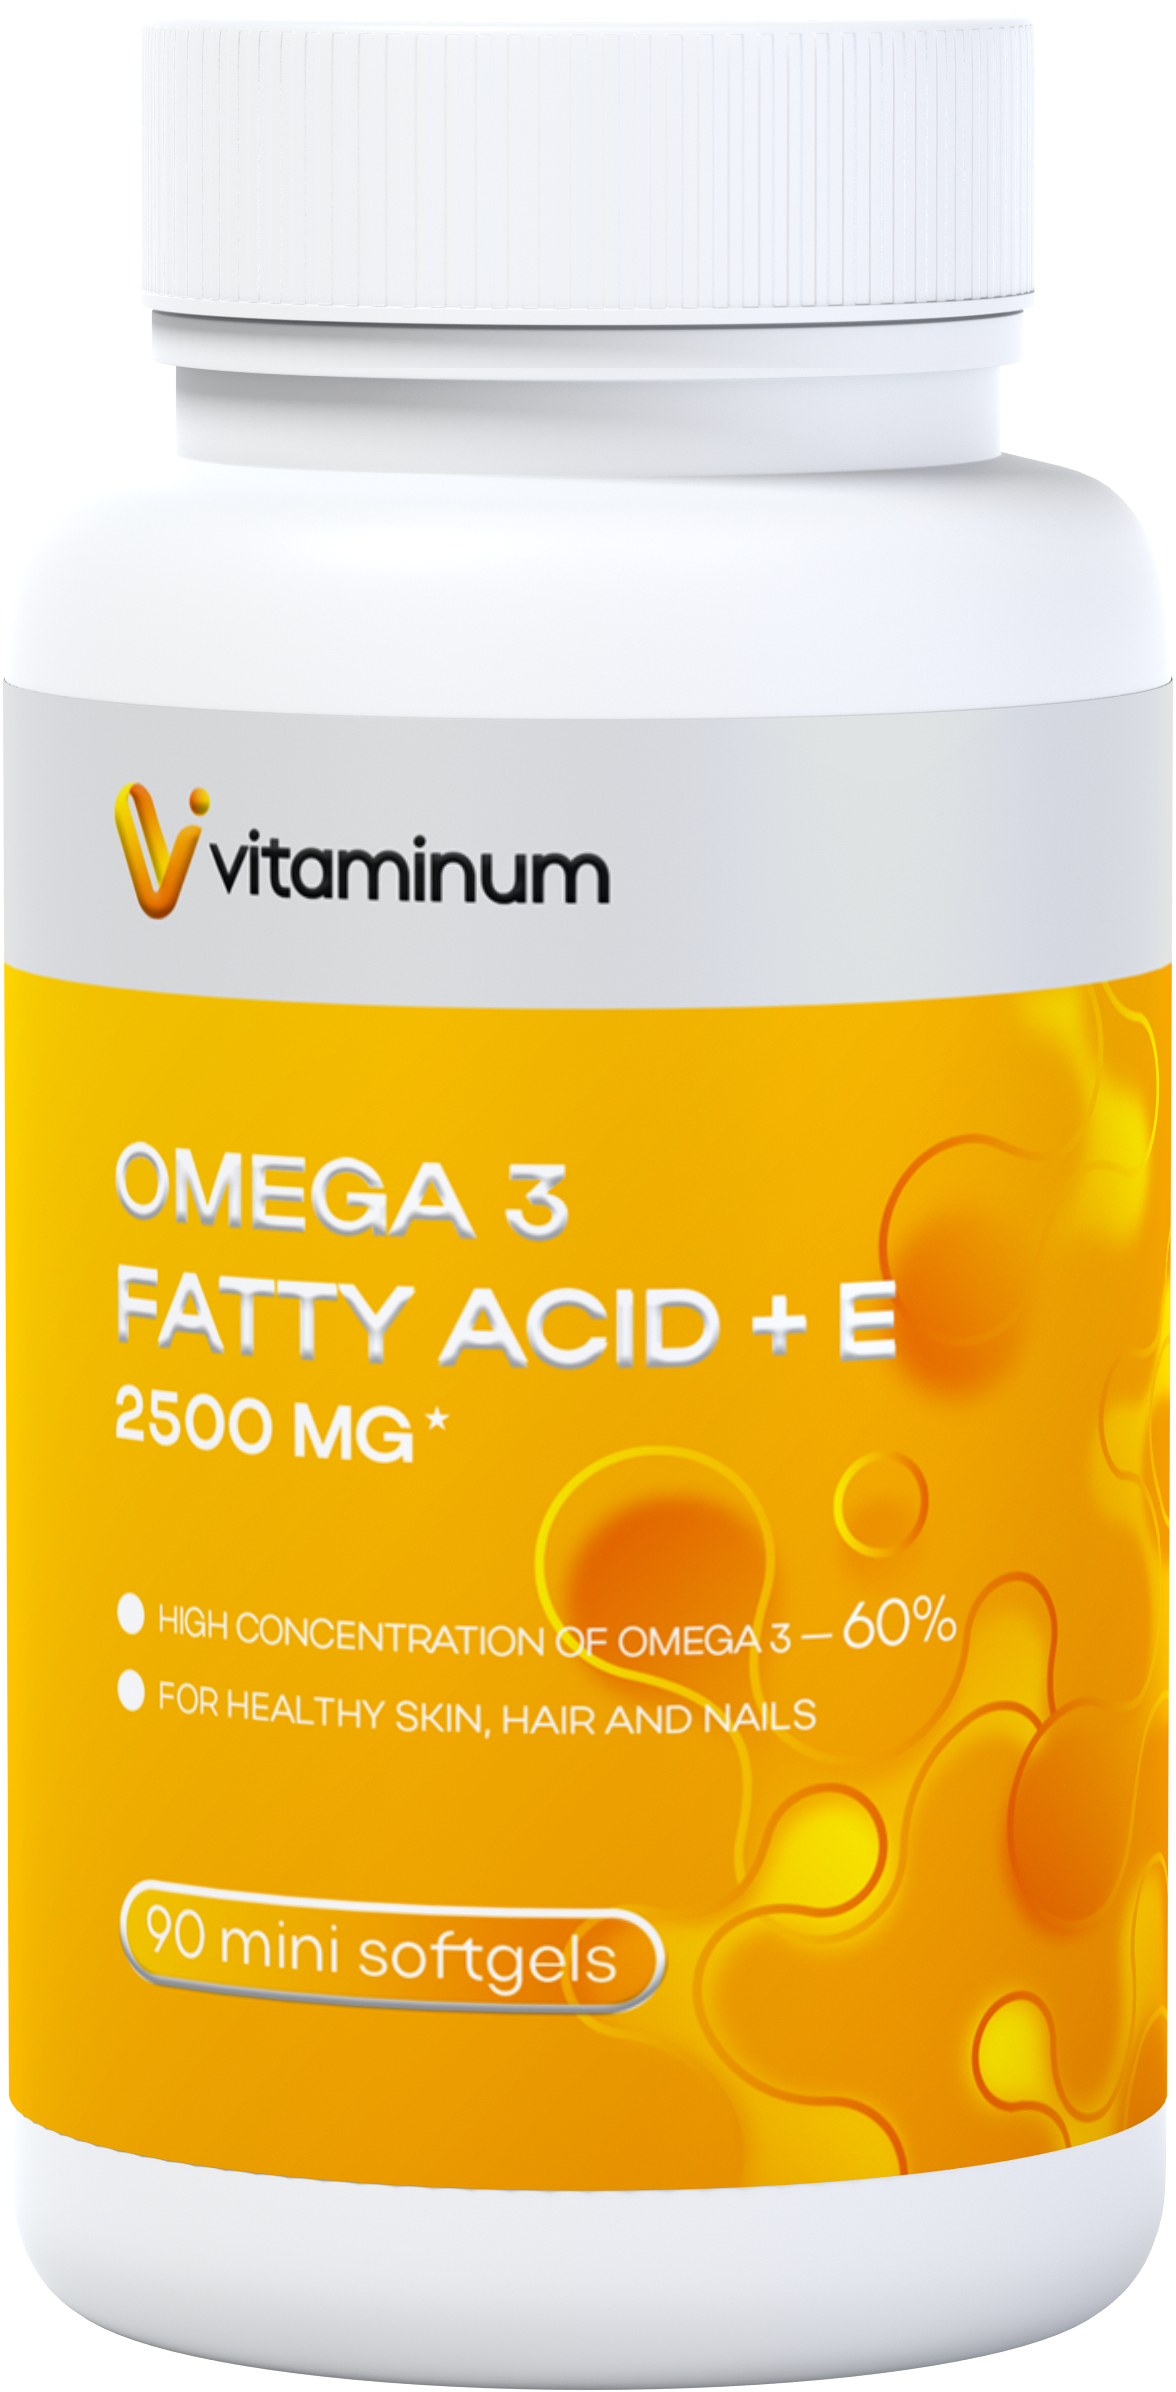  Vitaminum ОМЕГА 3 60% + витамин Е (2500 MG*) 90 капсул 700 мг   в Перми